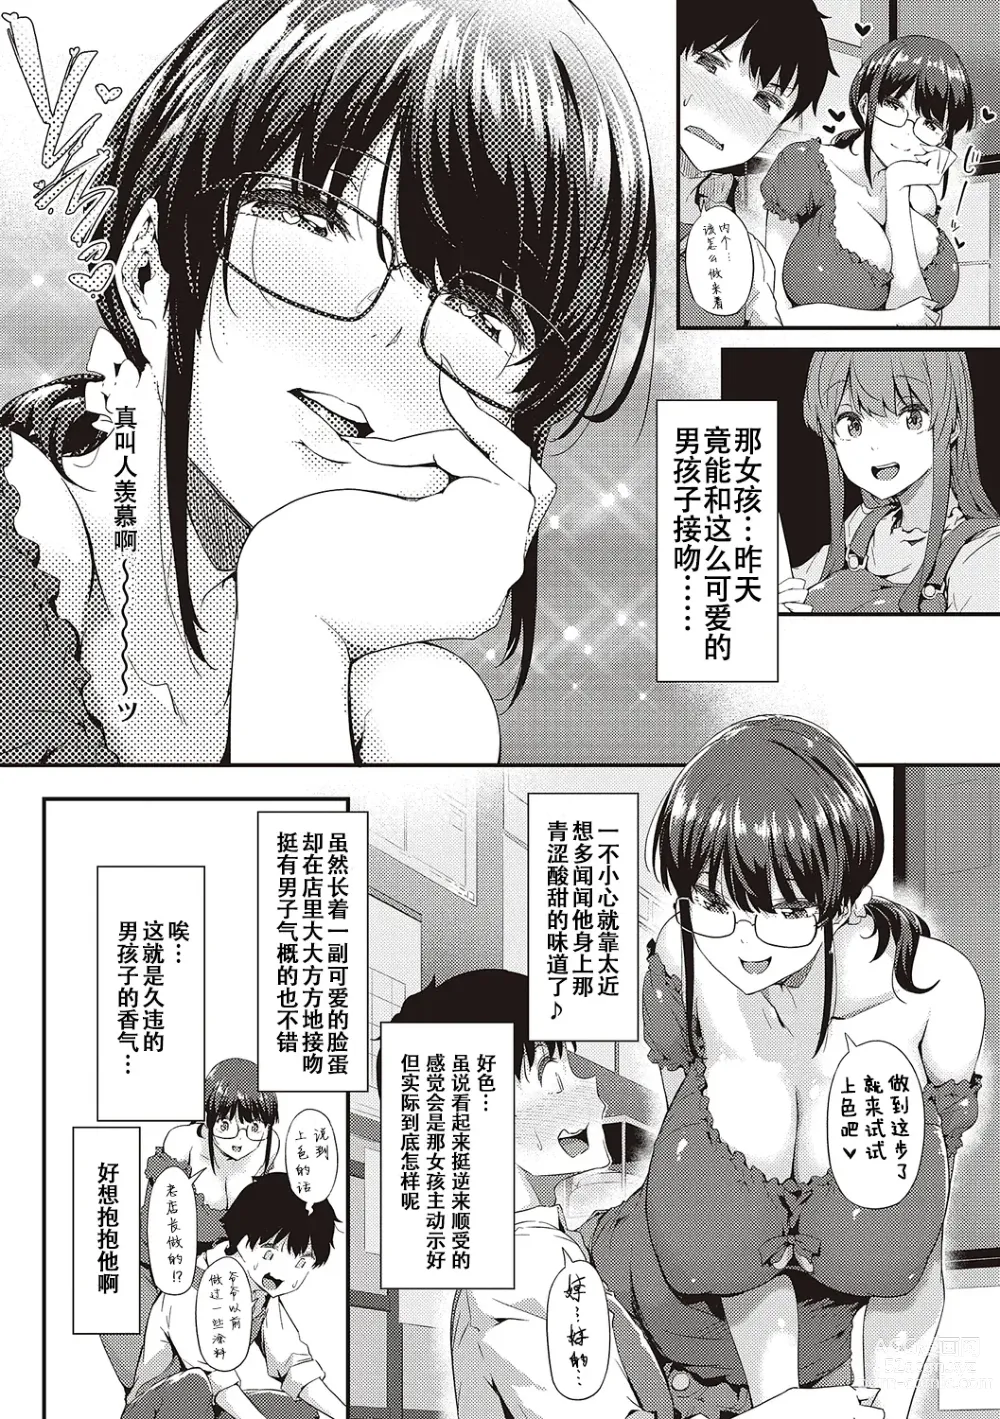 Page 40 of manga Shiranai Koto Shiritai no?